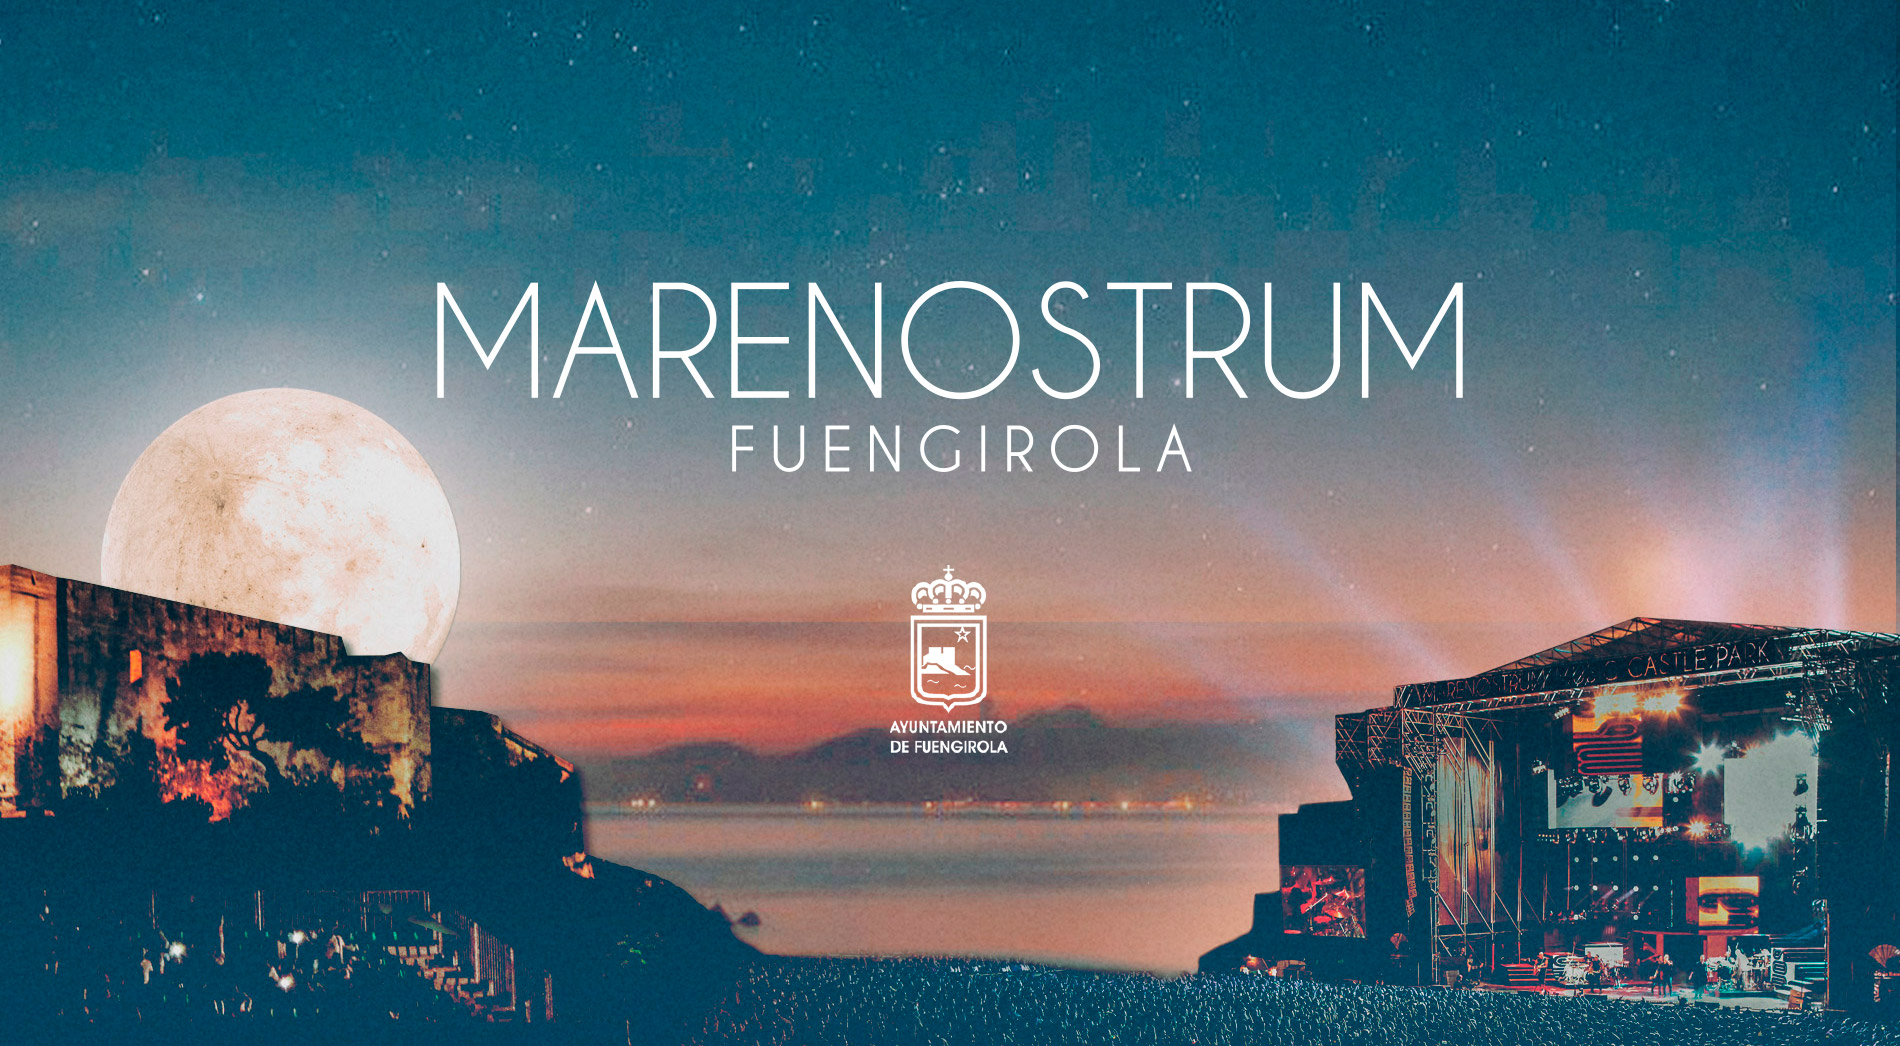 Marenostrum_Fuengirola